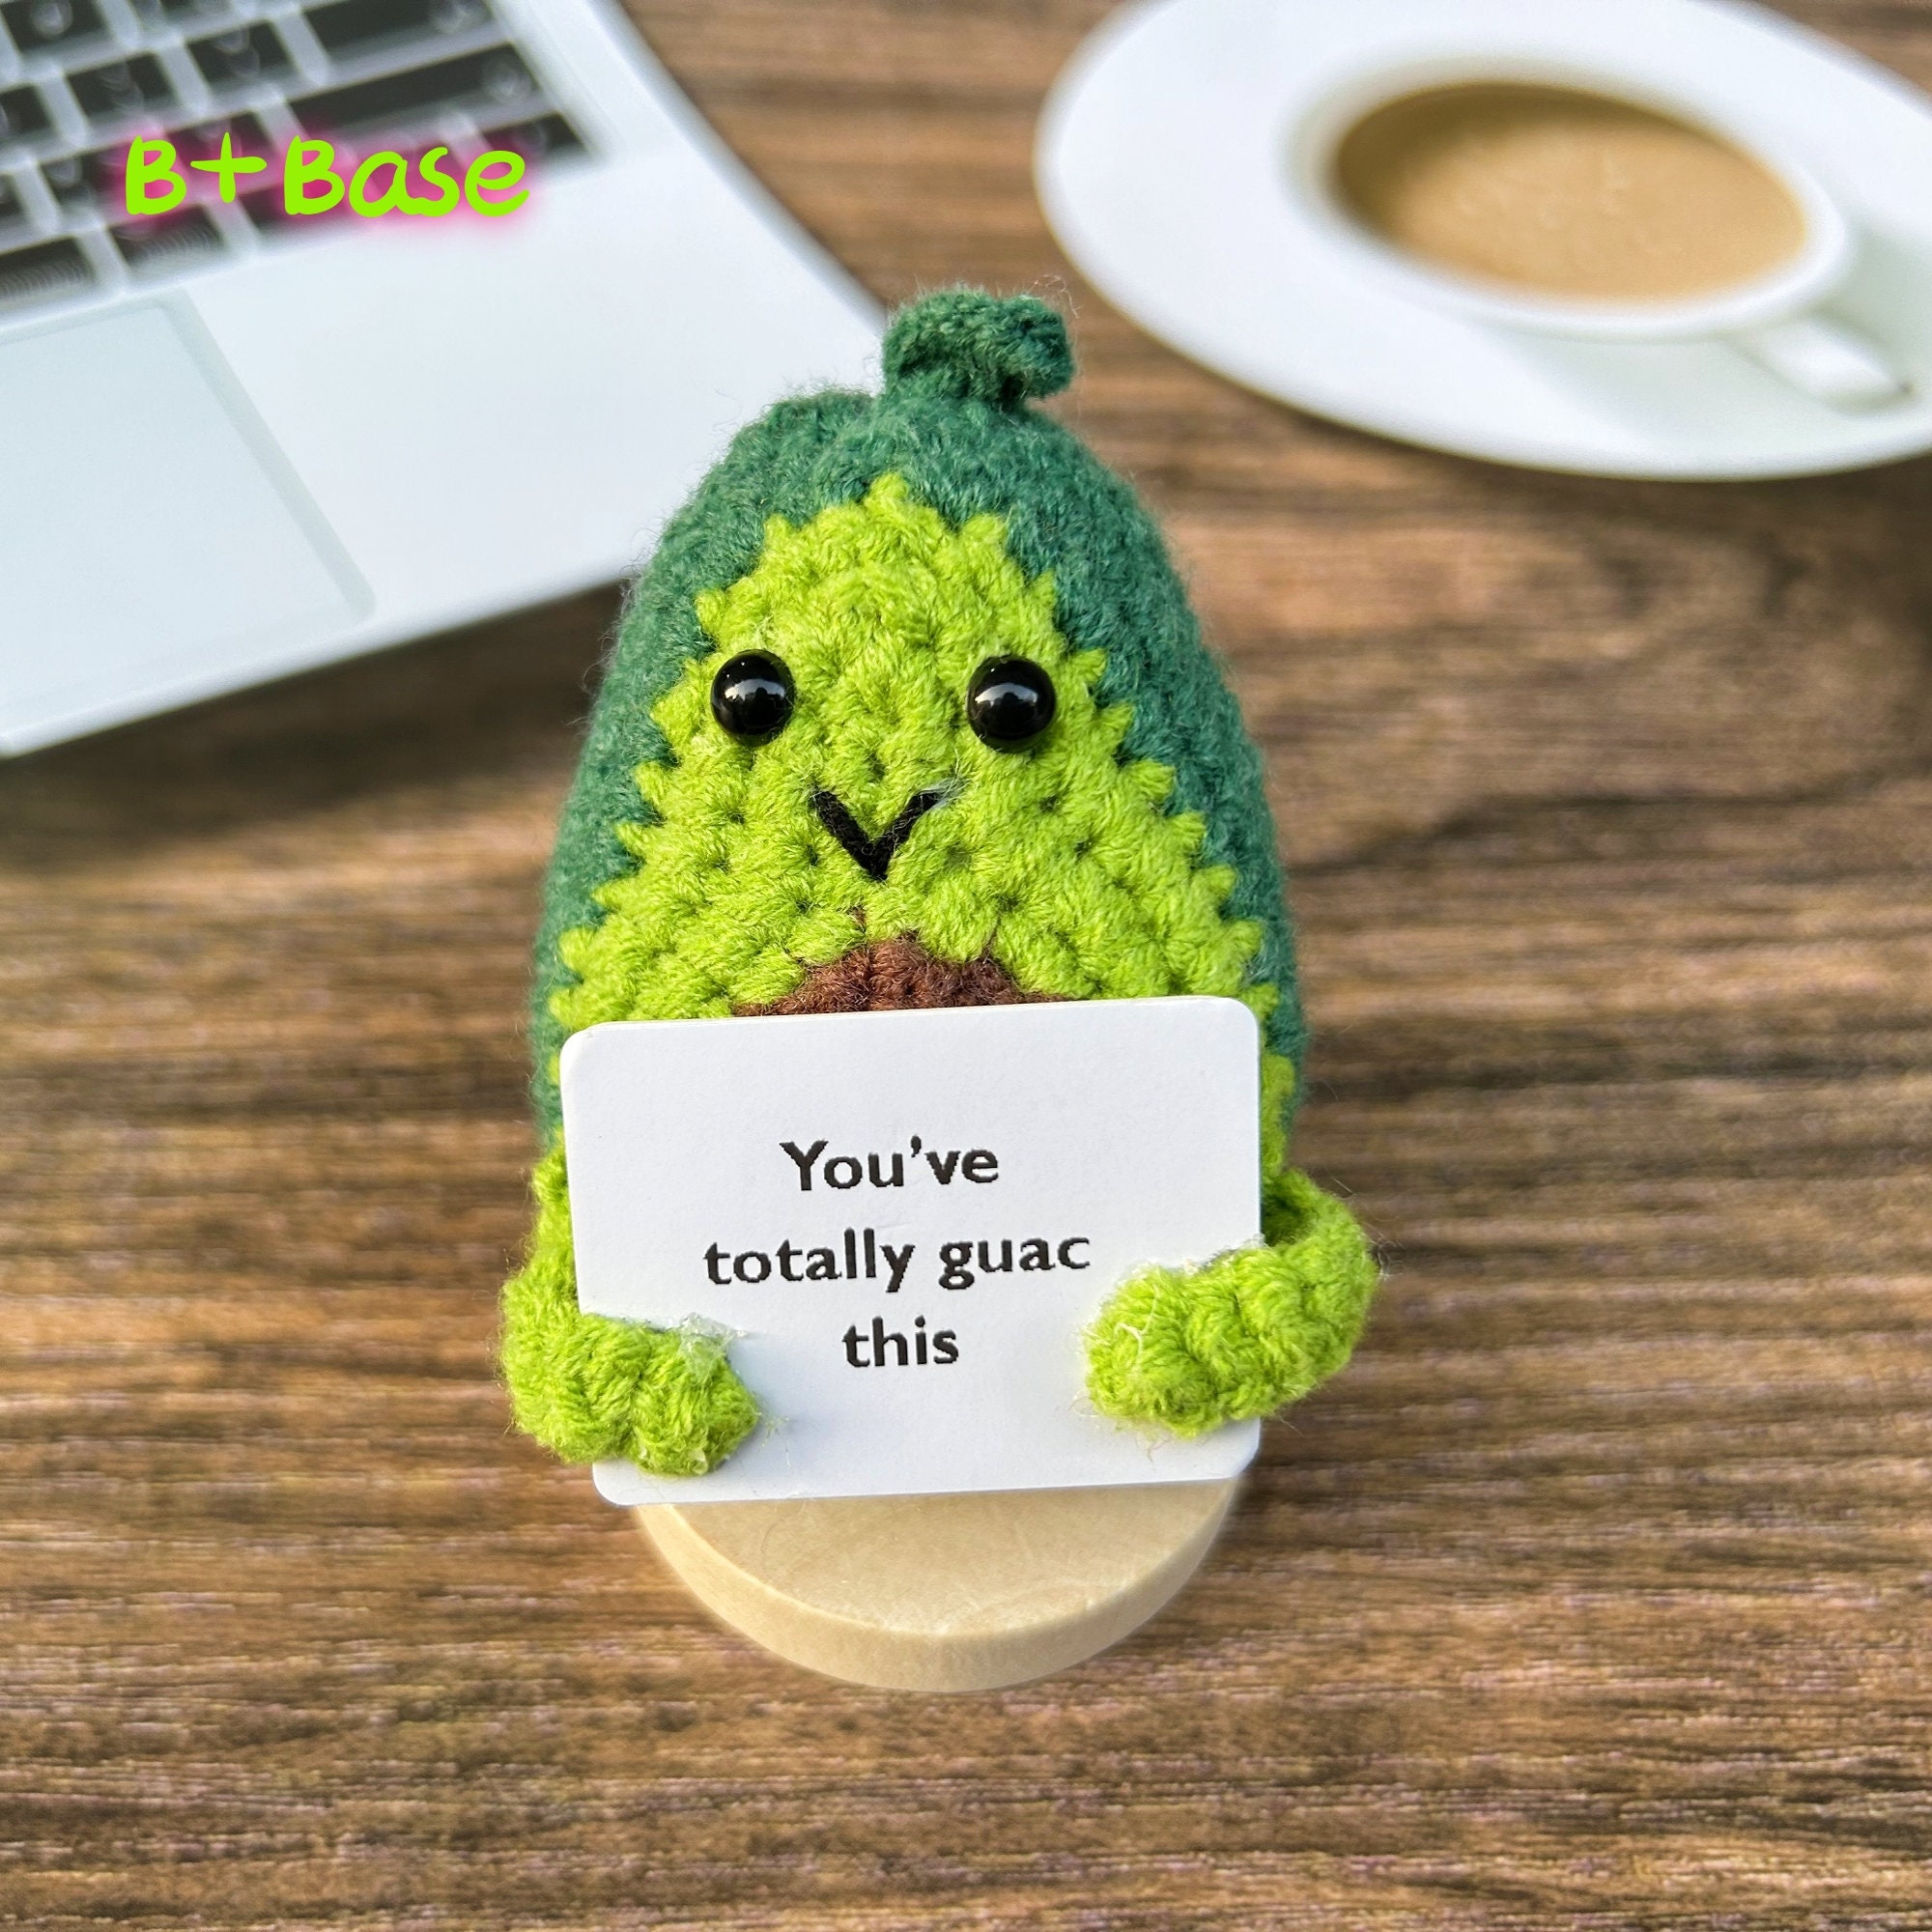 Everyone needs an emotional support avocado 🥑 #bird #conure #avocado